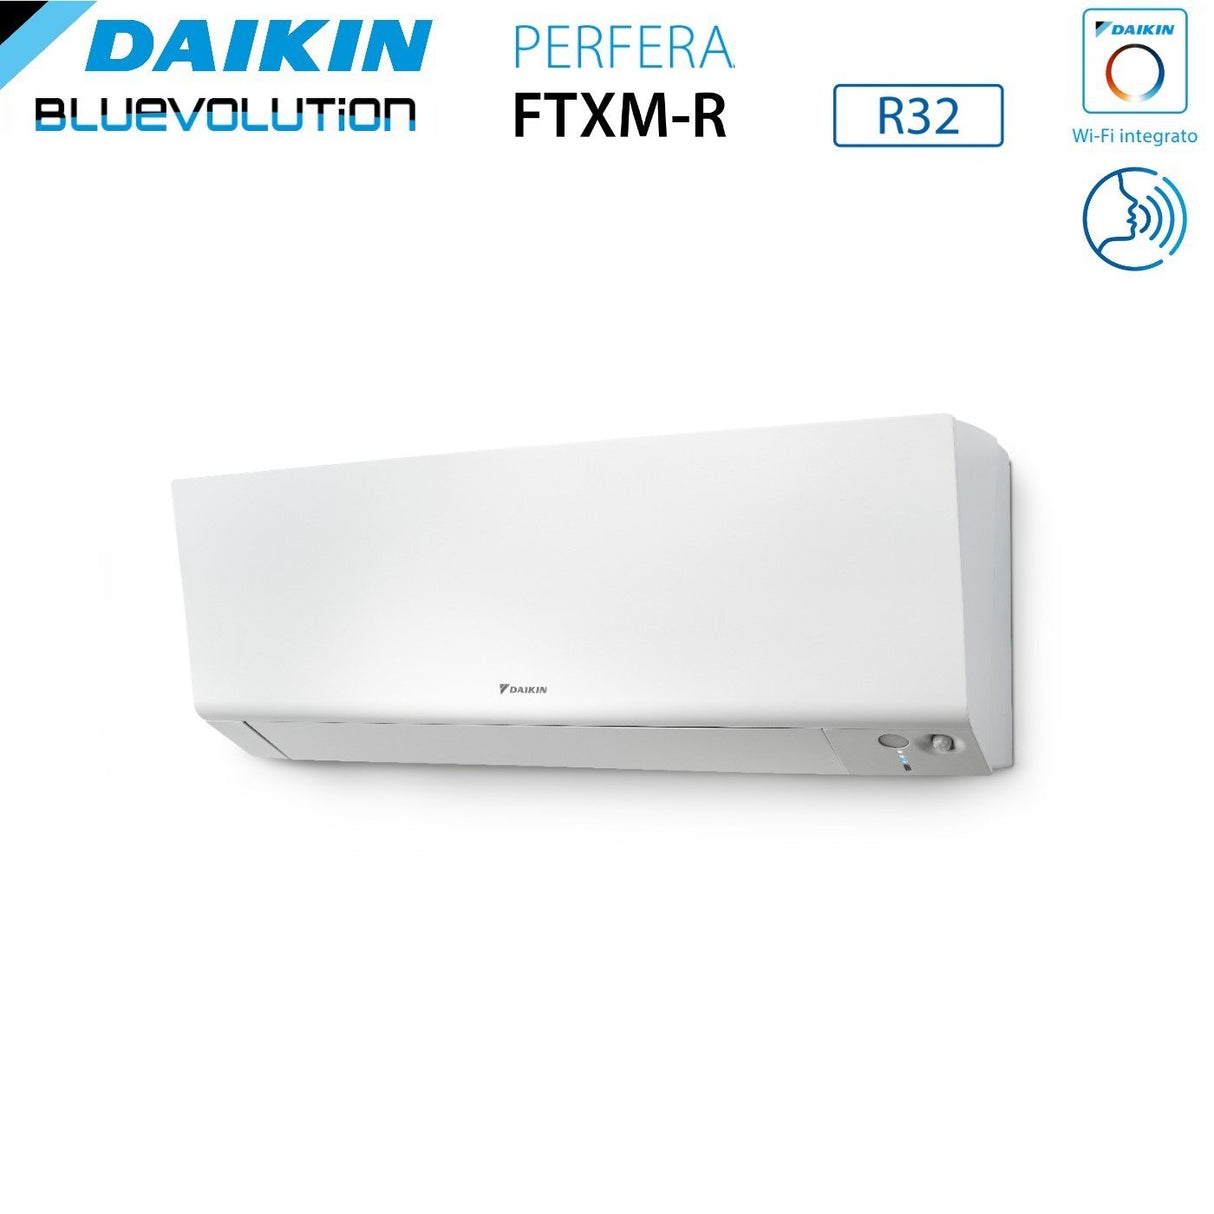 immagine-5-daikin-climatizzatore-condizionatore-daikin-bluevolution-quadri-split-inverter-serie-ftxmr-perfera-wall-7799-con-4mxm80a-r-32-wi-fi-integrato-7000700090009000-garanzia-italiana